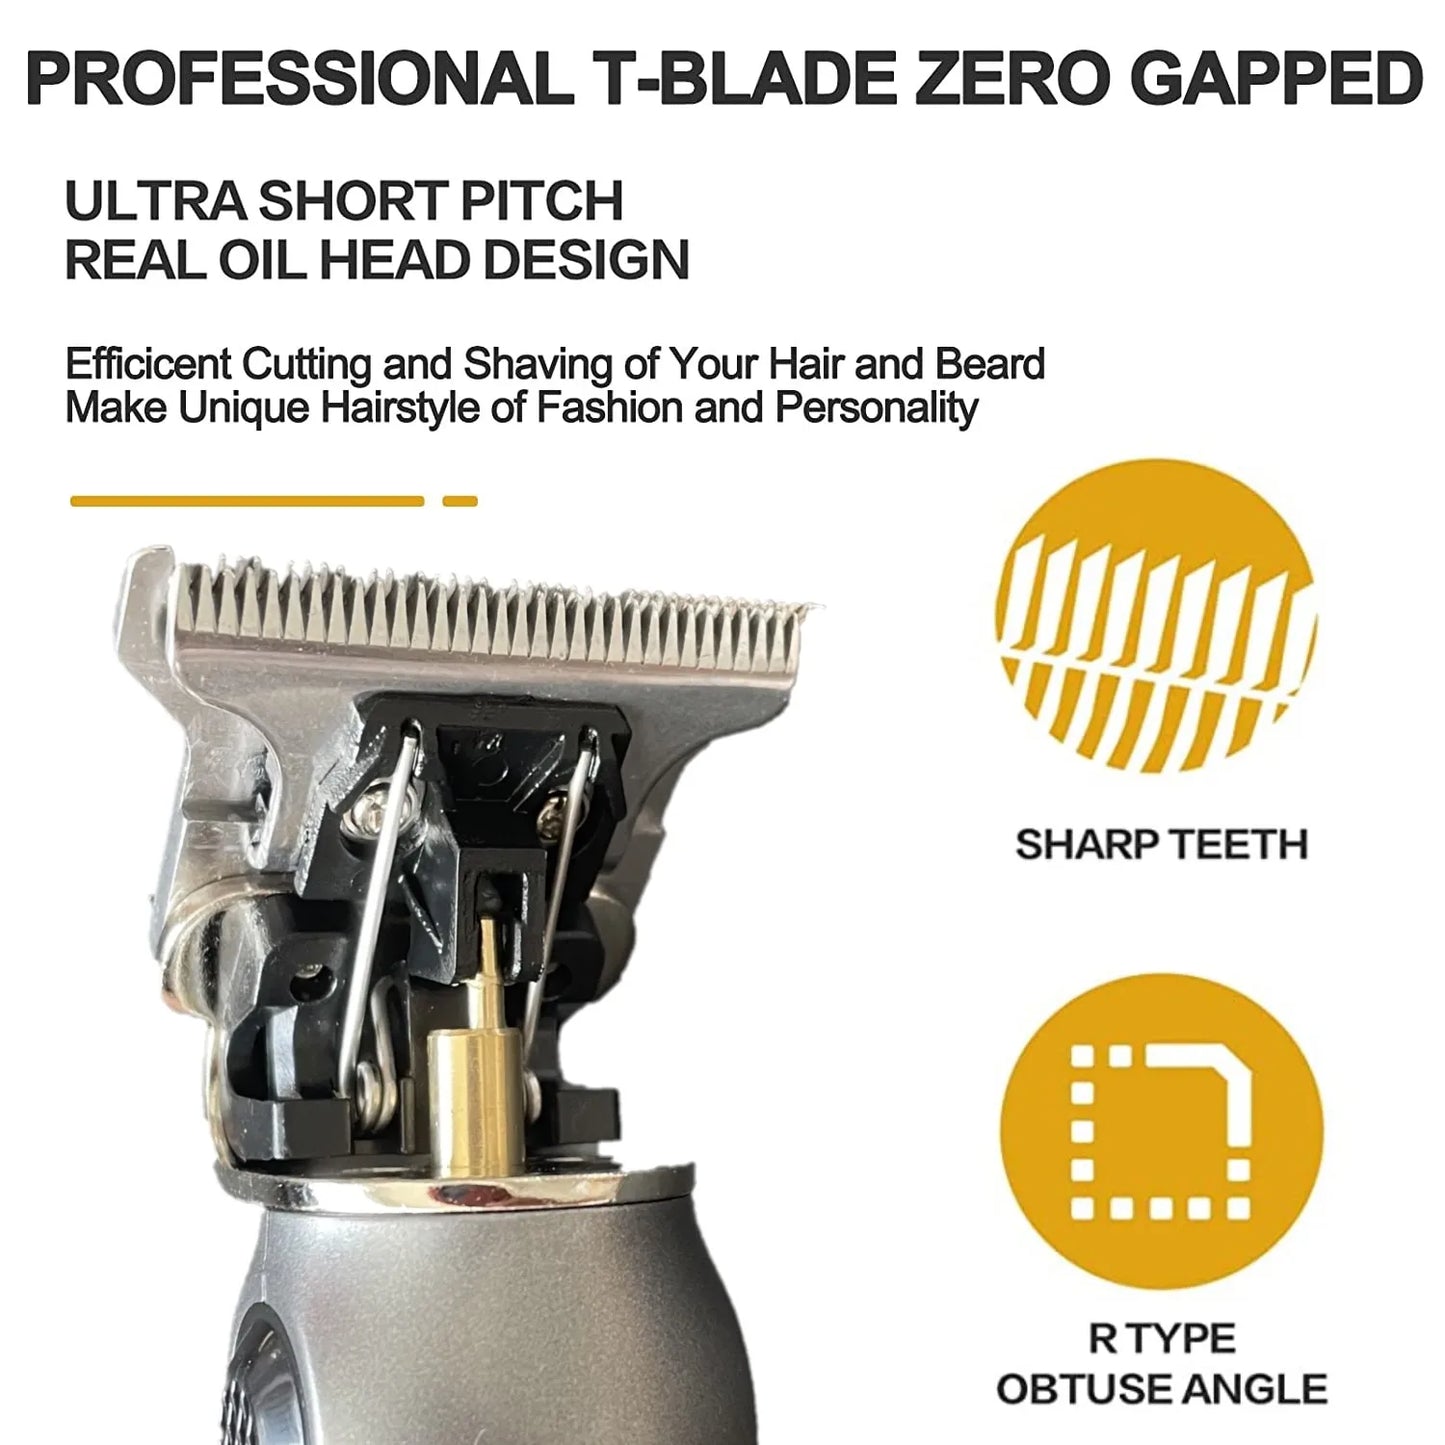 KEMEI Electric T9 Hair Clipper Men's Hair Cutting Machine Professional Engravable